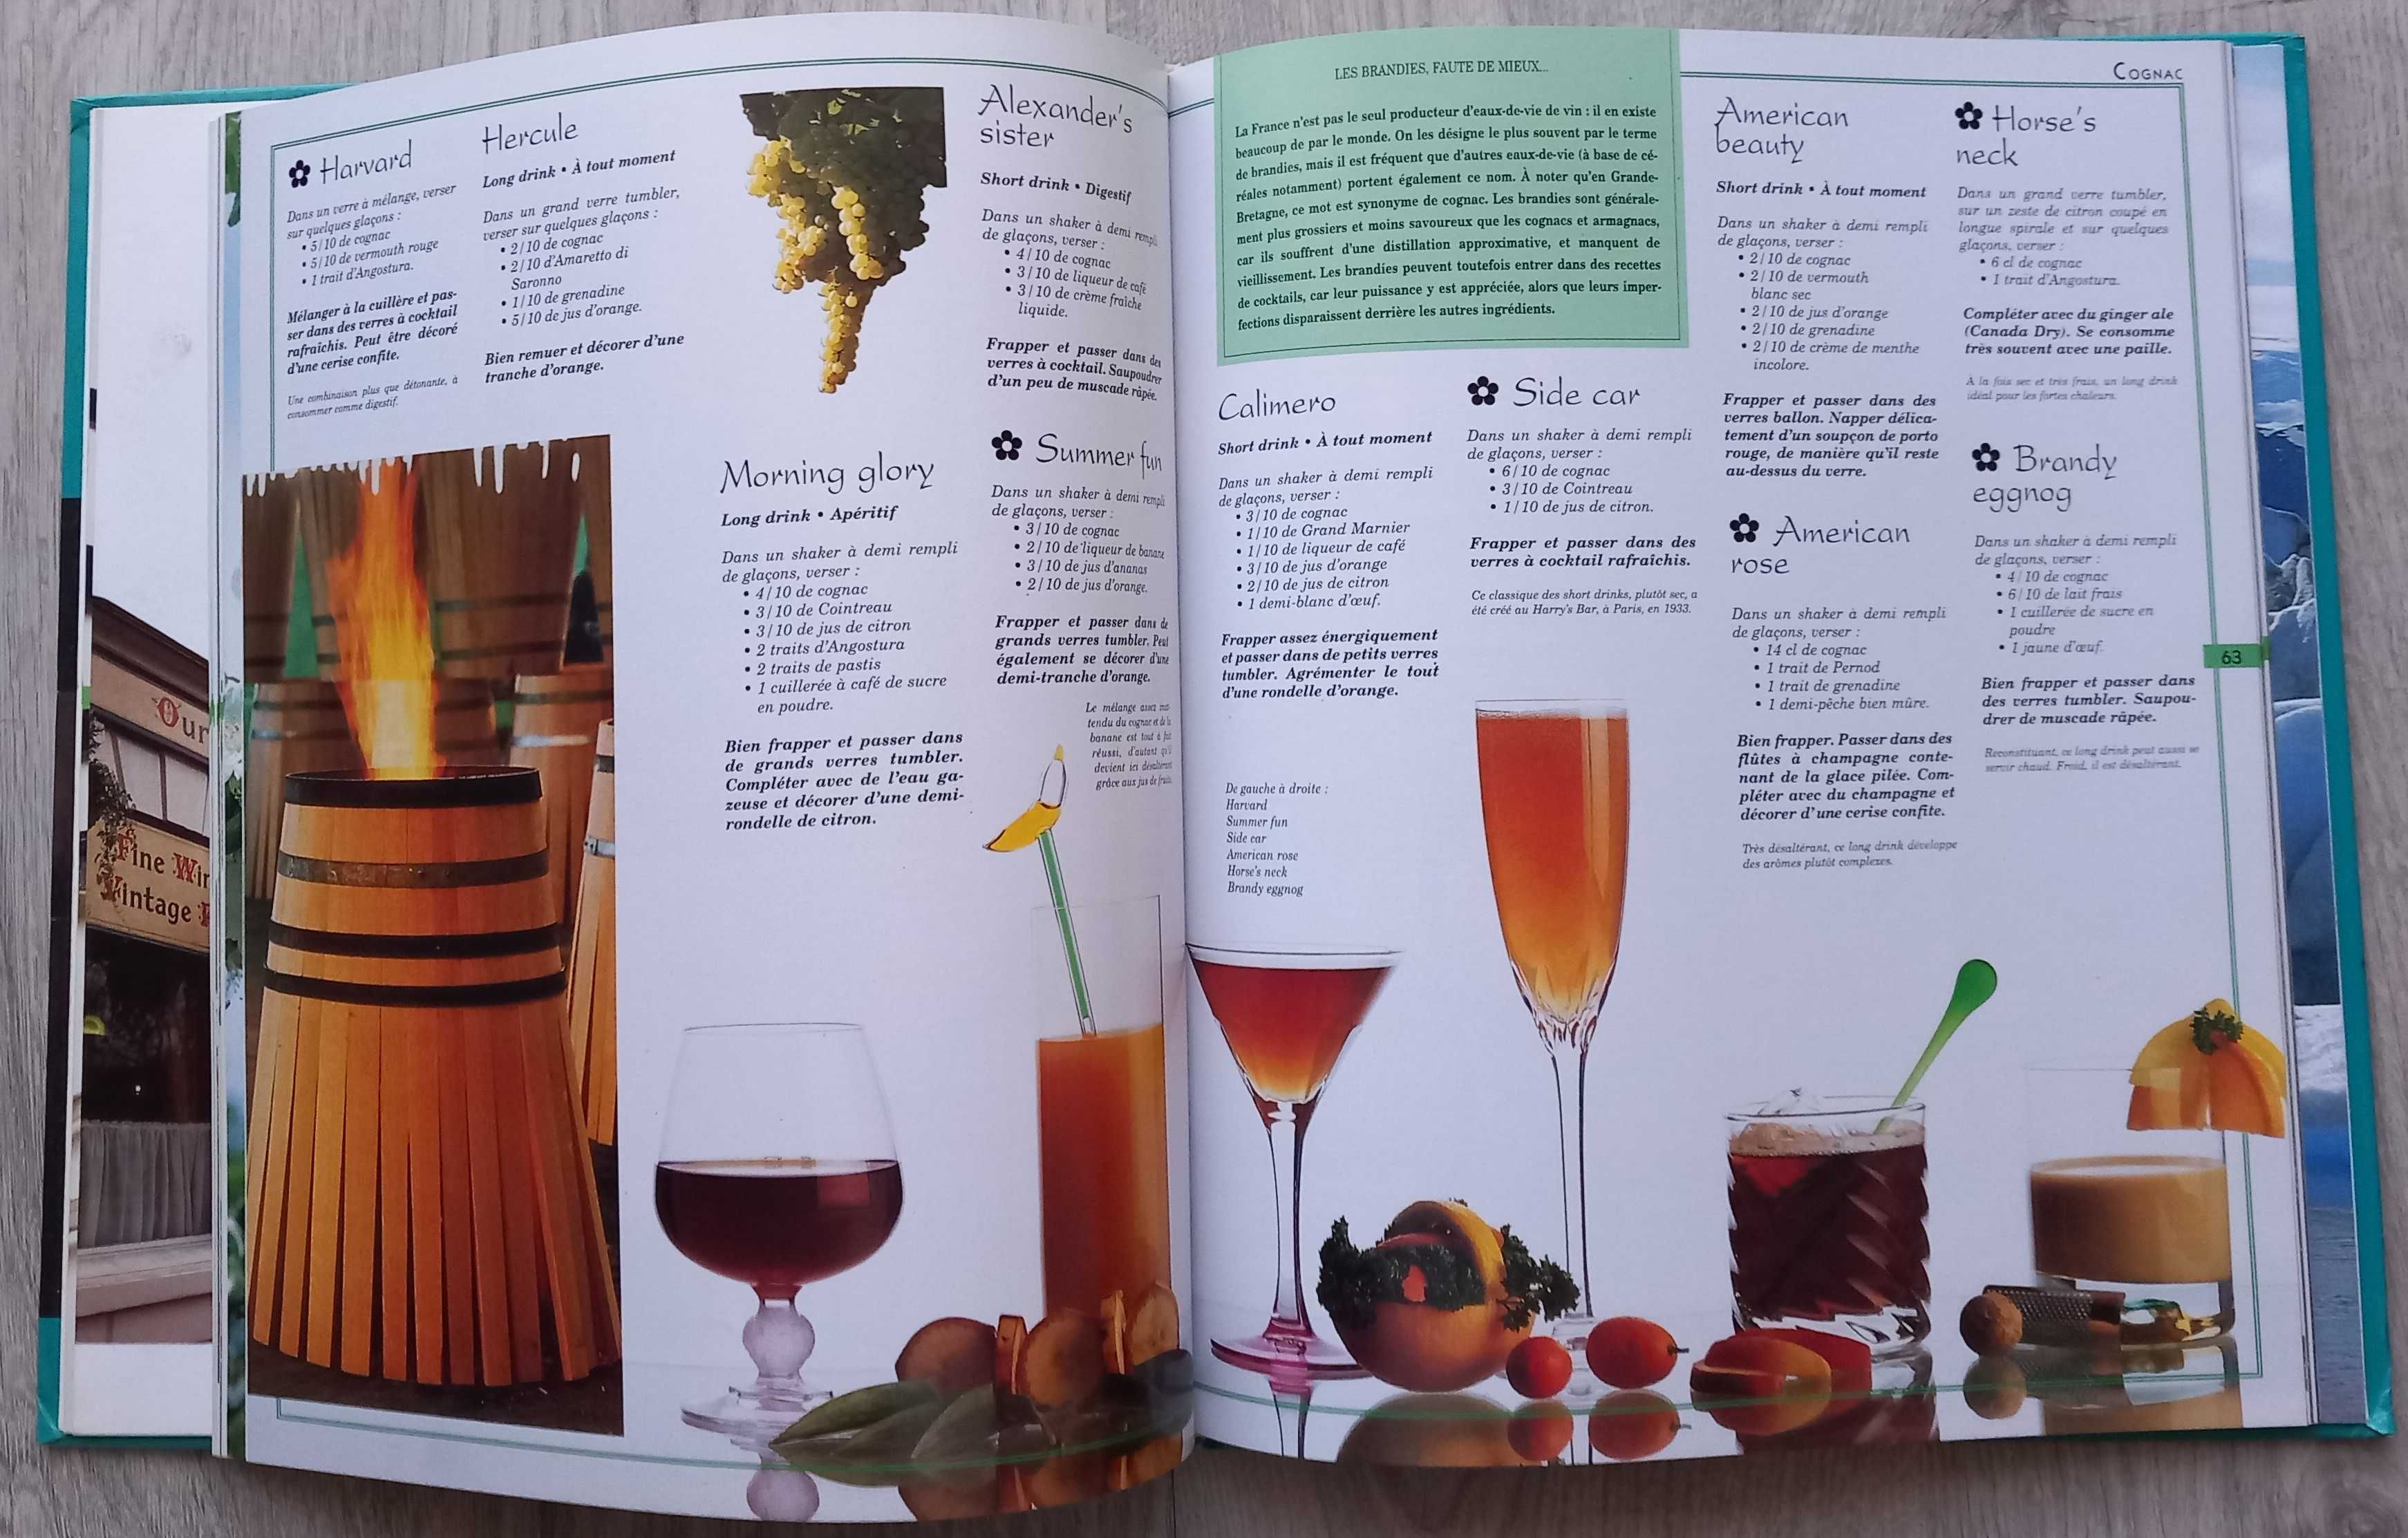 Univers de Cocktails: Les 300 meilleures recettes avec ou sans alcool.